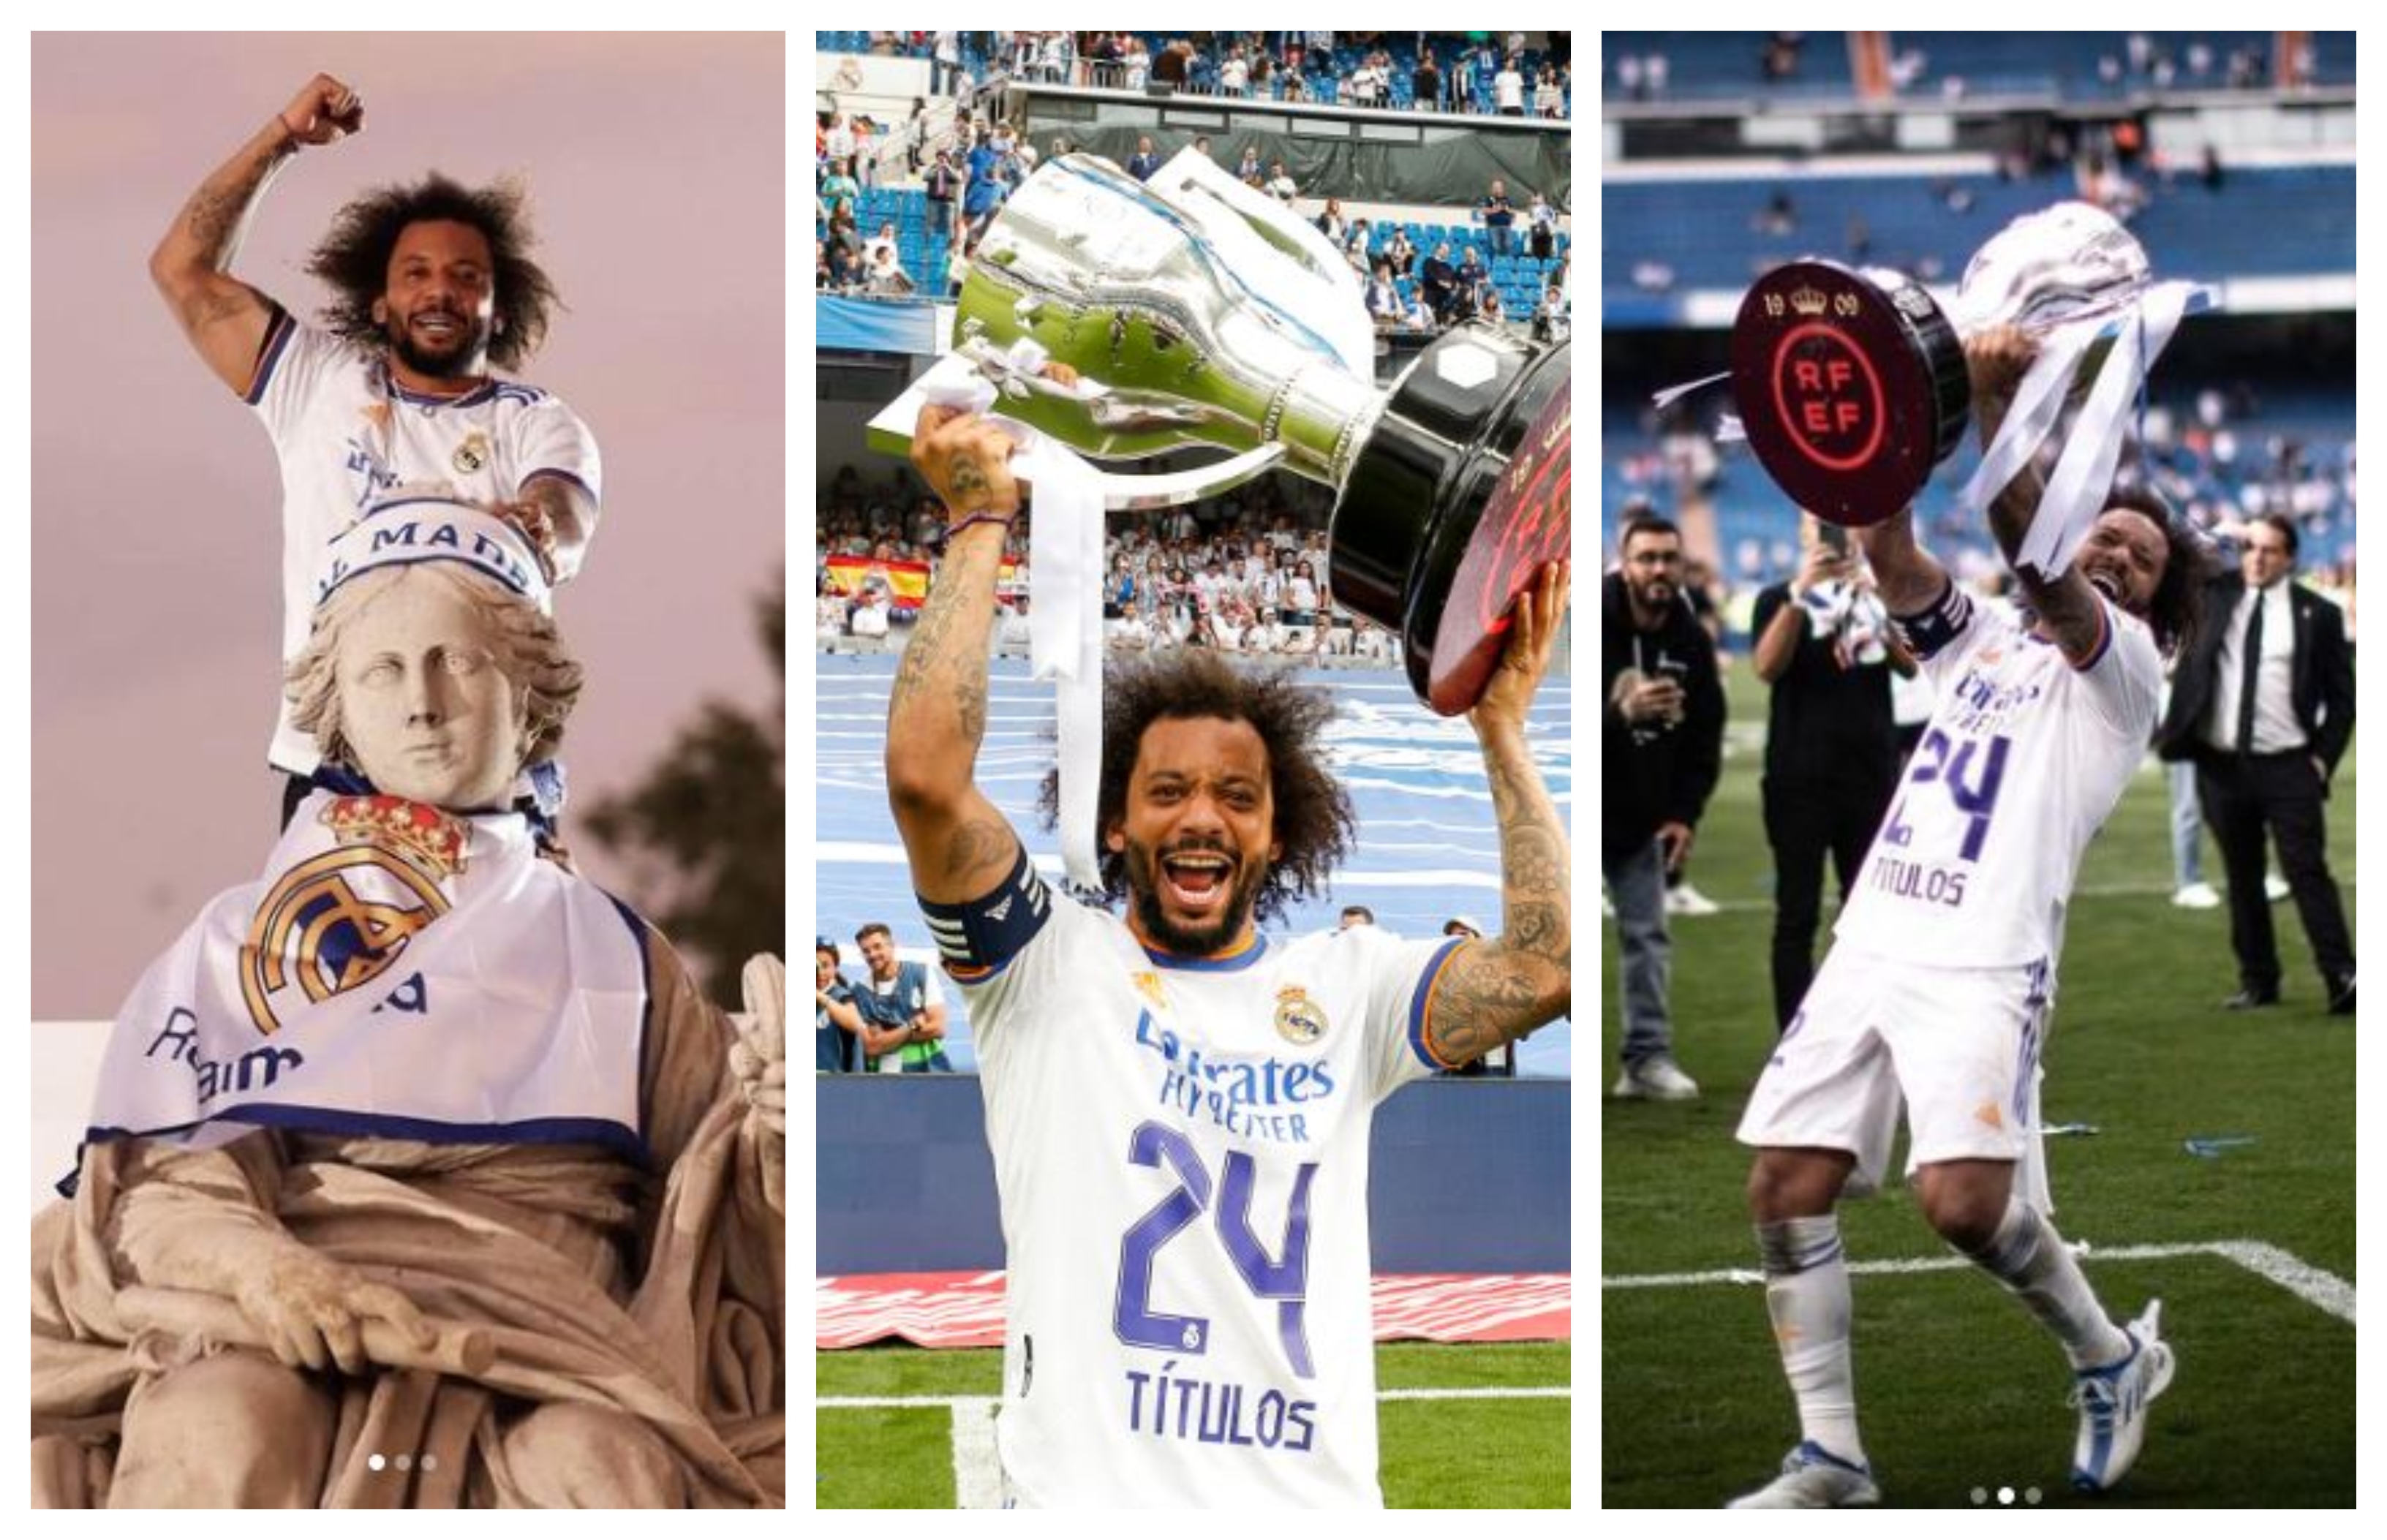 Marcelo festejó el título 24 en su historia con el Real Madrid. El brasileño cumplió este 12 de mayo 34 años. (Foto Marcelo).